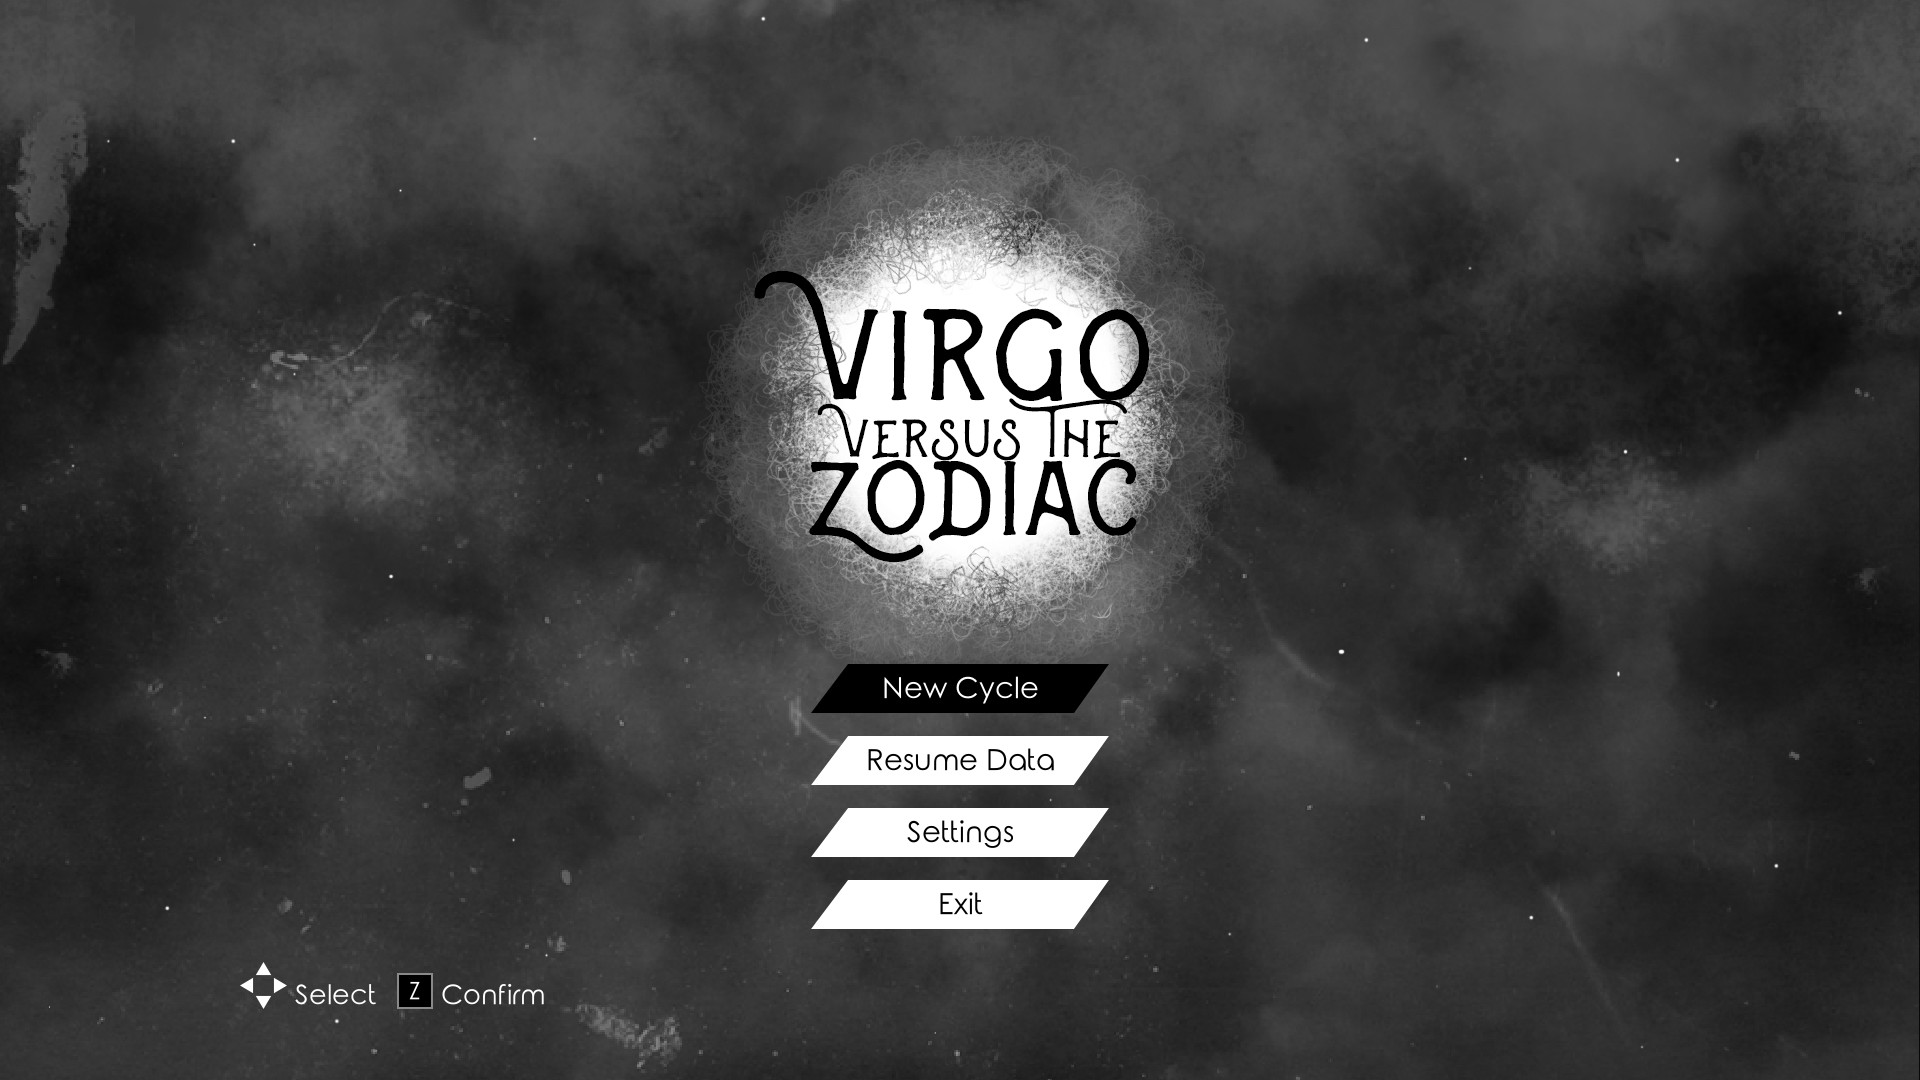 Virgo versus the Zodiac